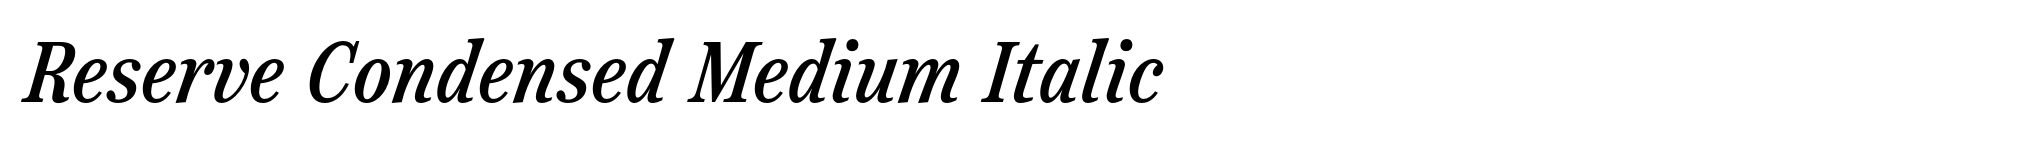 Reserve Condensed Medium Italic image